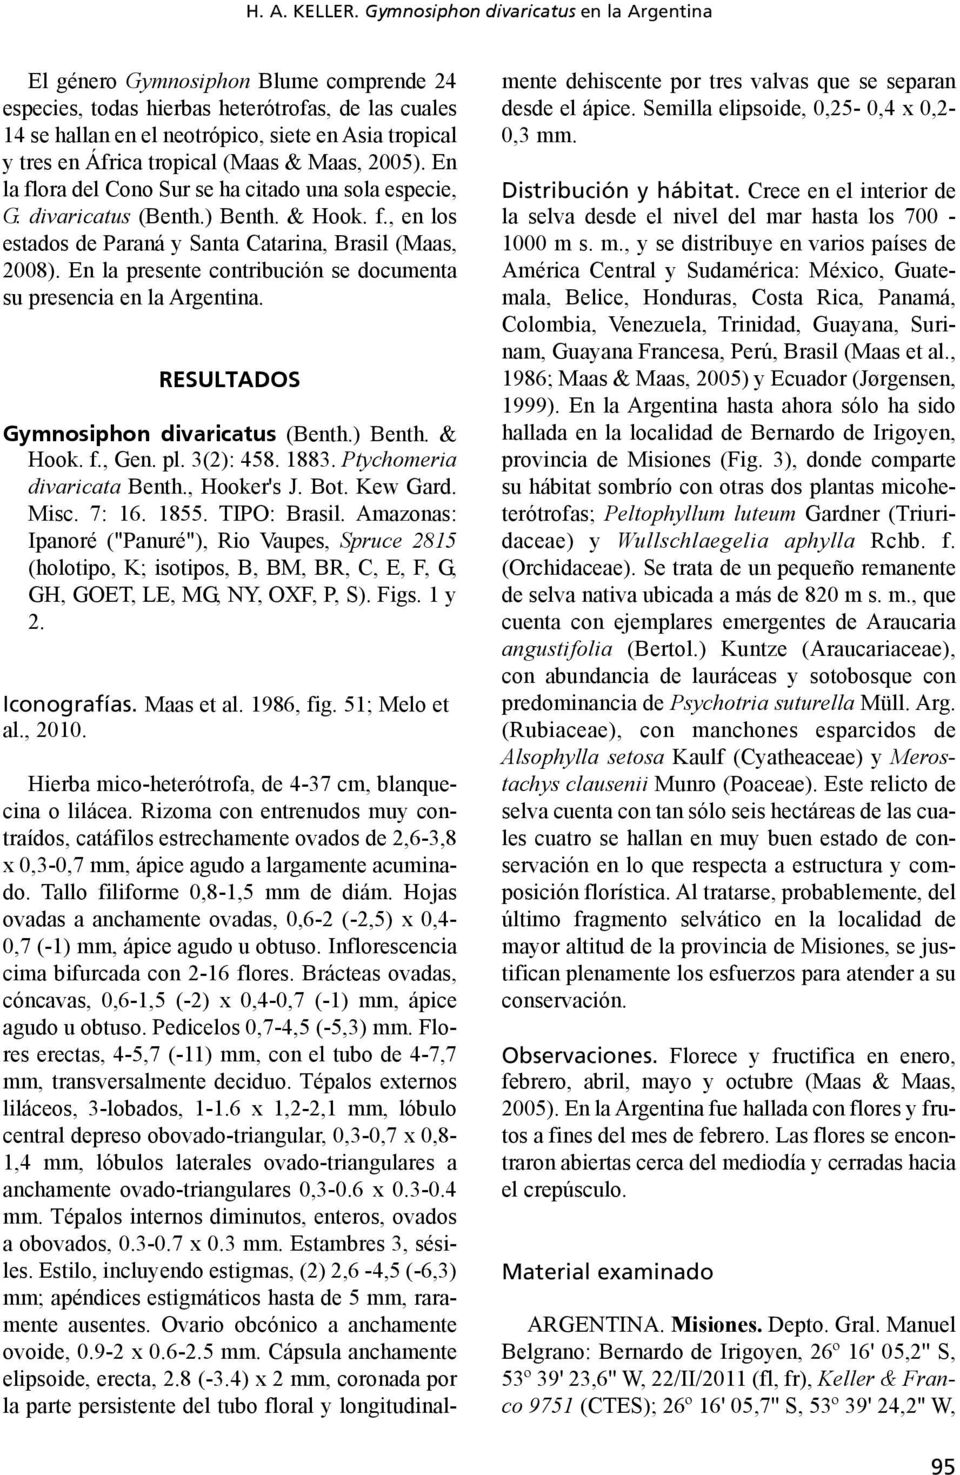 África tropical (Maas & Maas, 2005). En la flora del Cono Sur se ha citado una sola especie, G. divaricatus (Benth.) Benth. & Hook. f., en los estados de Paraná y Santa Catarina, Brasil (Maas, 2008).